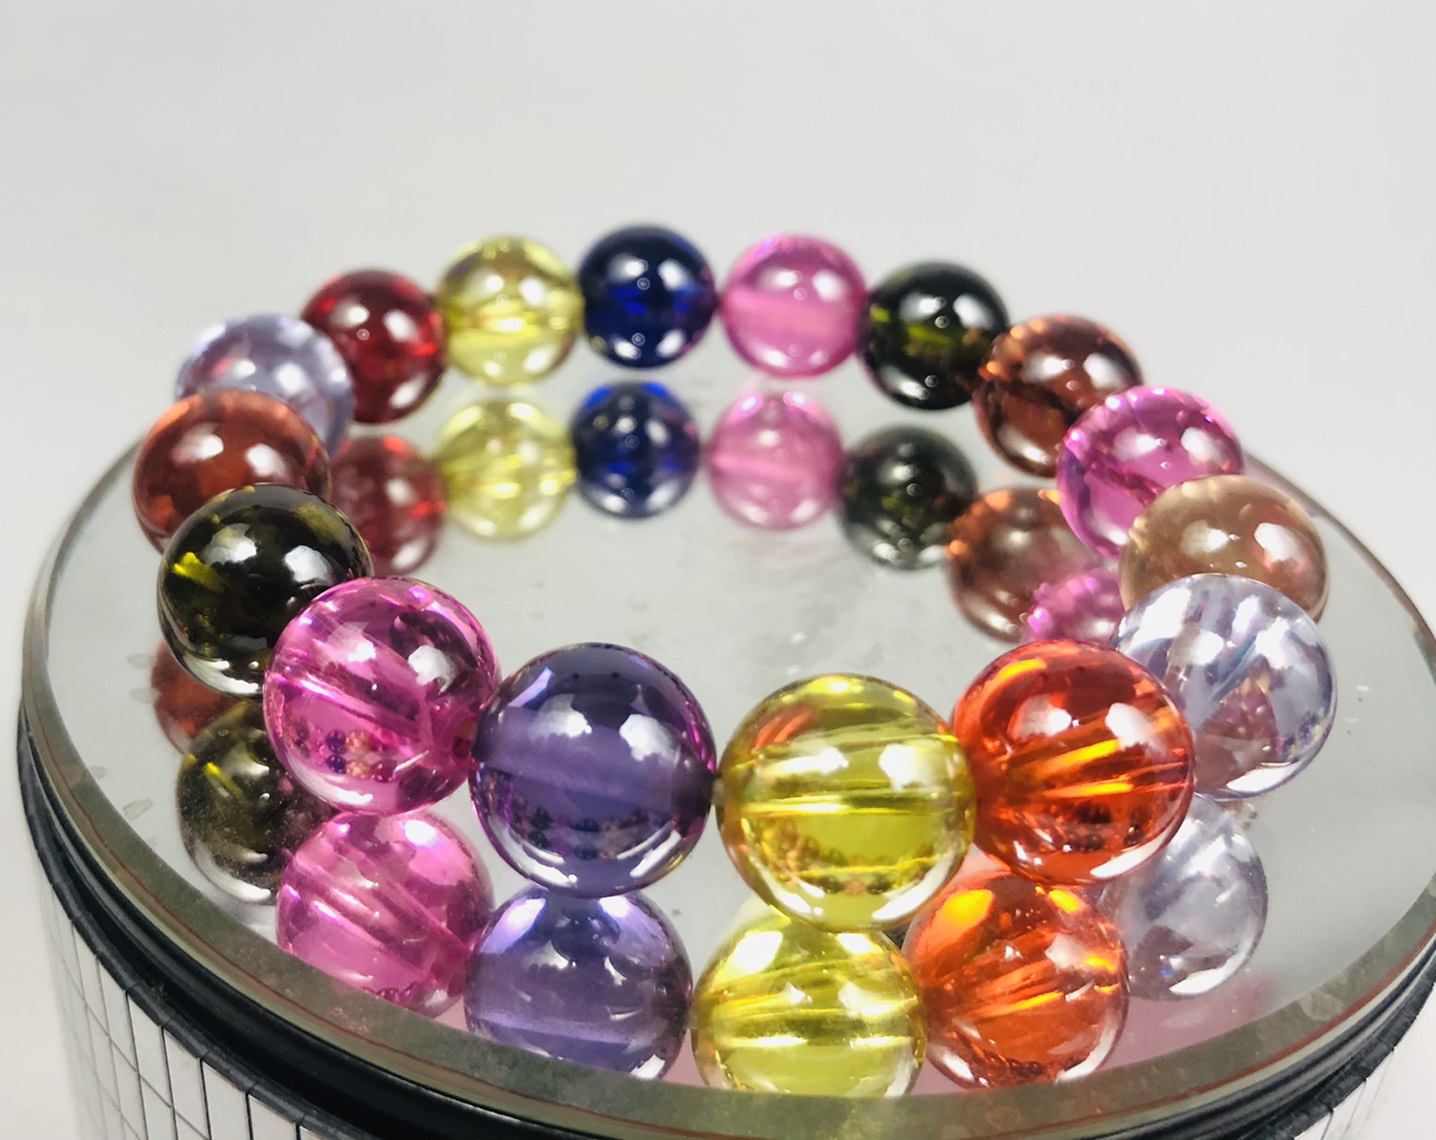 Details about  / Bracelet Naga Eye 9 Color “Corn Design” Thai Amulet Protect Charm Rich Talisman